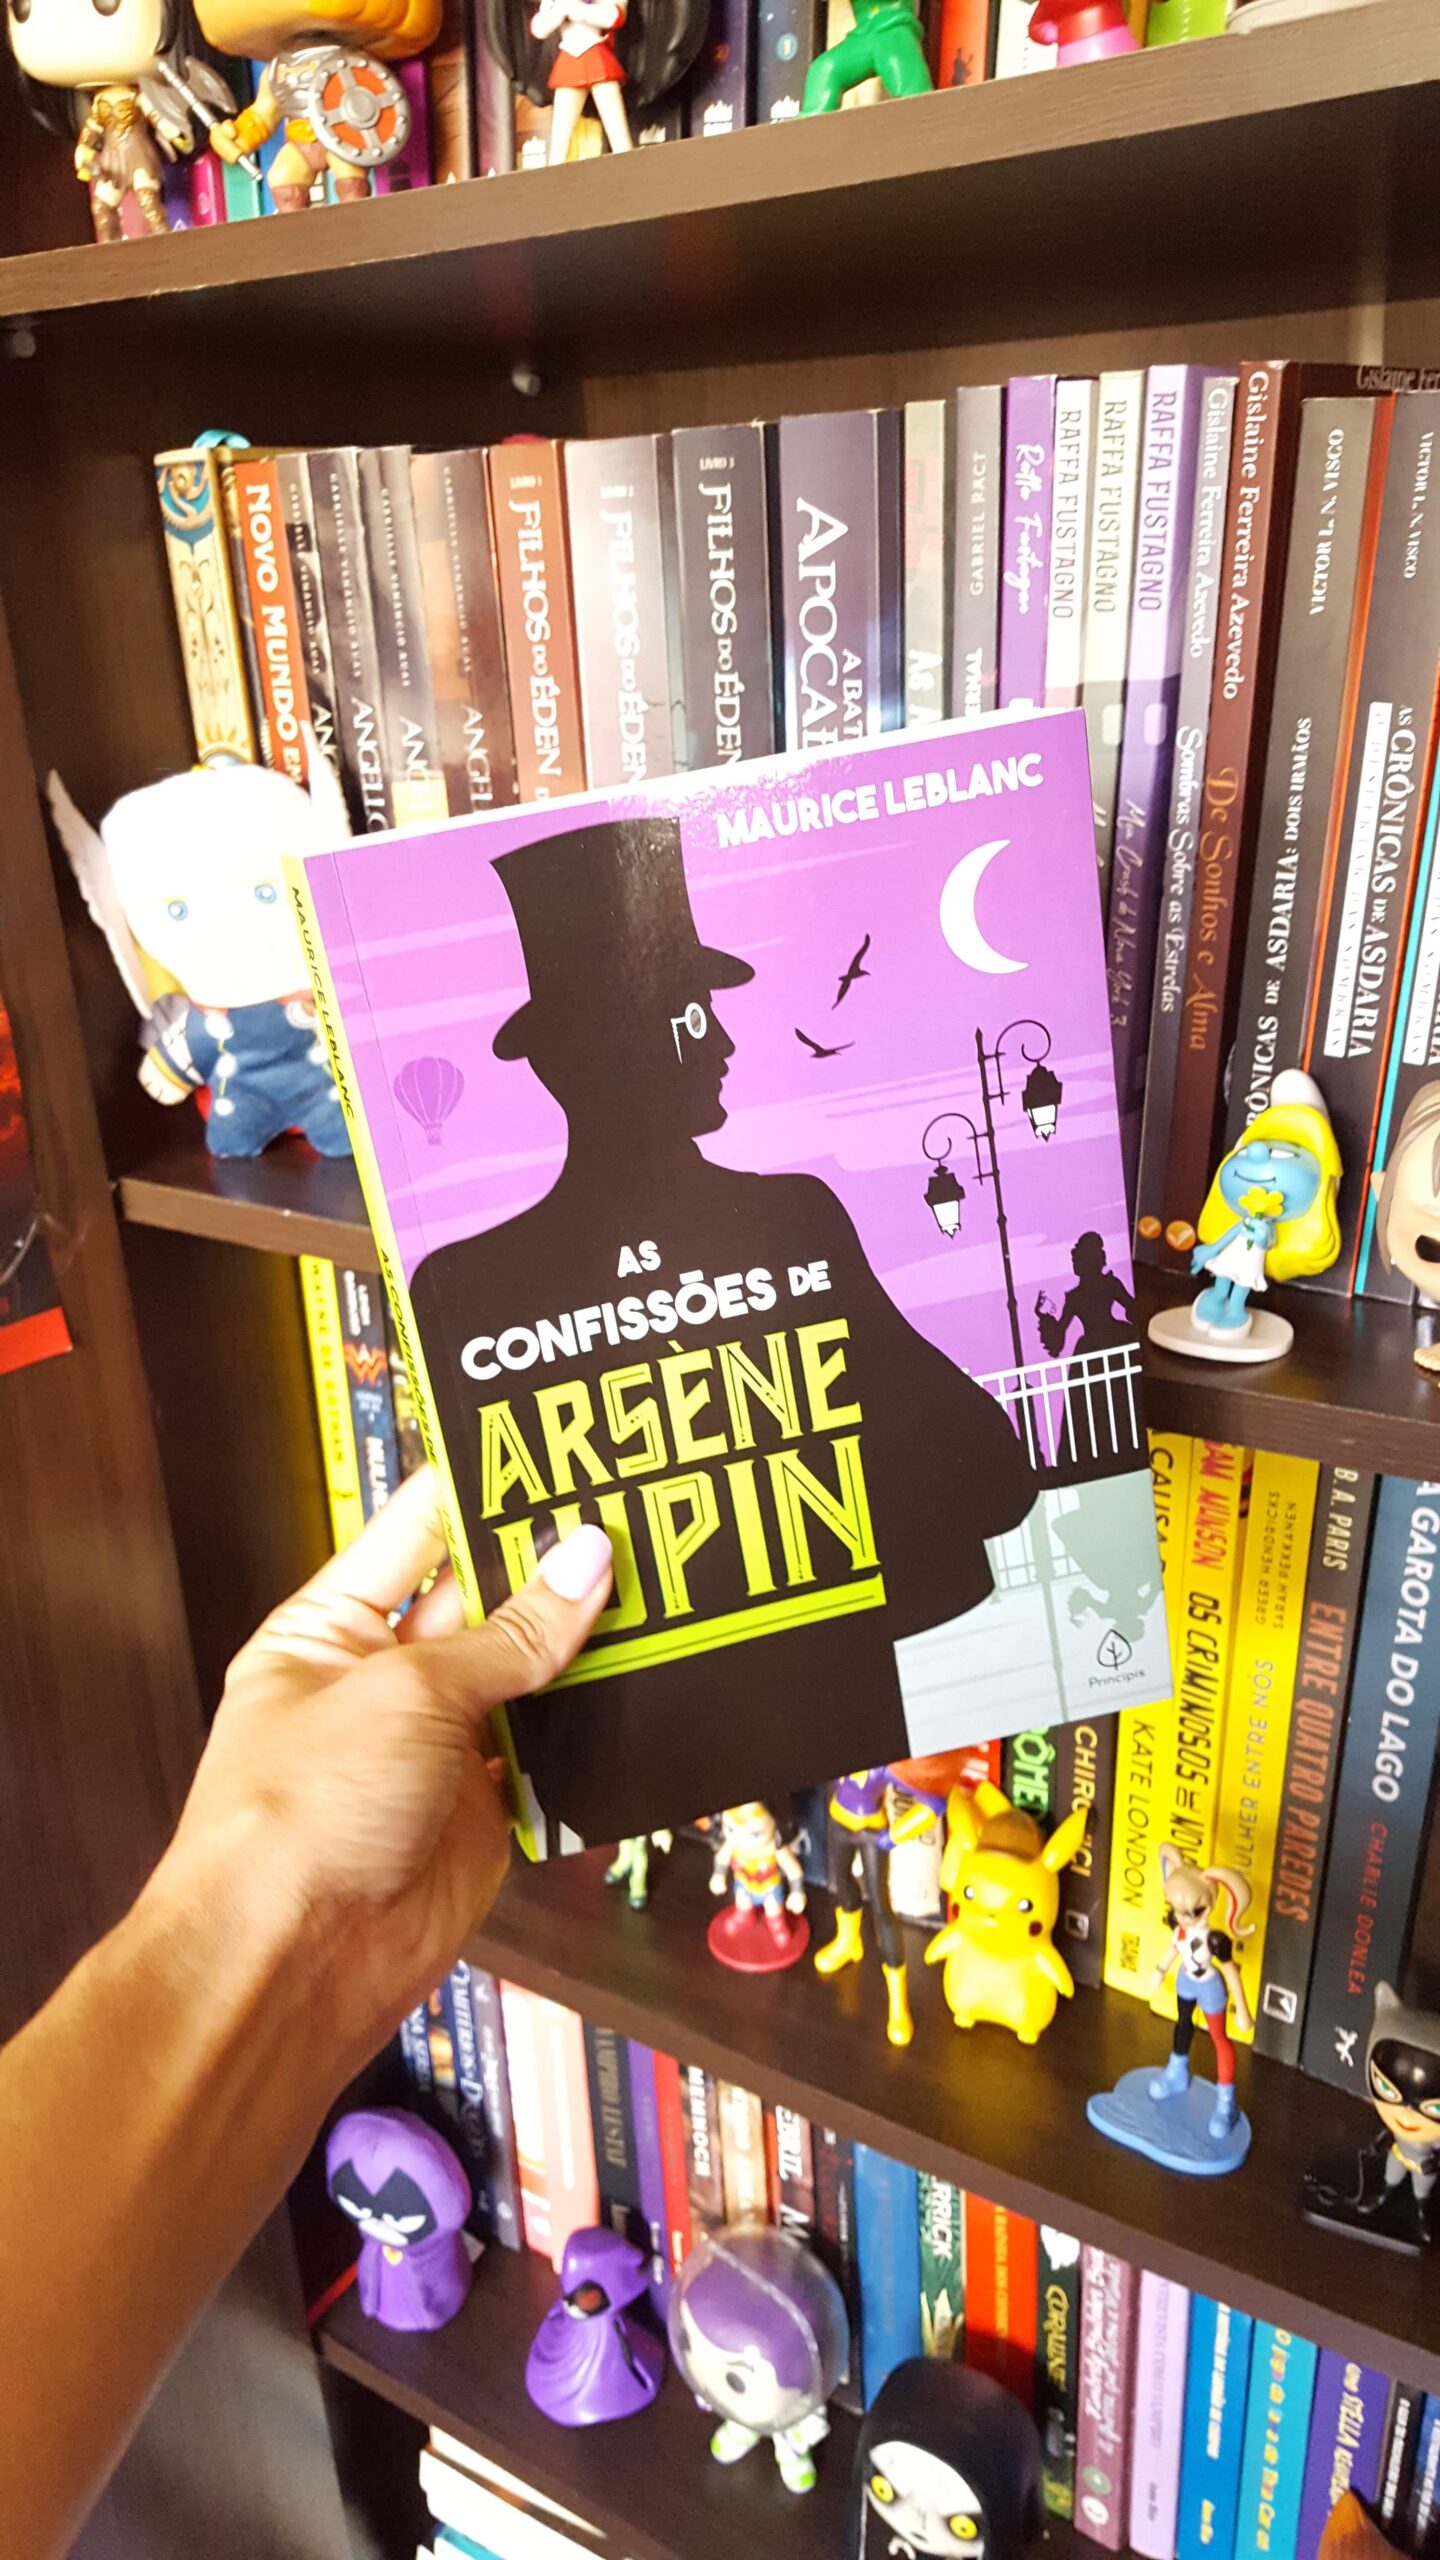 As Confissões de Arsène Lupin